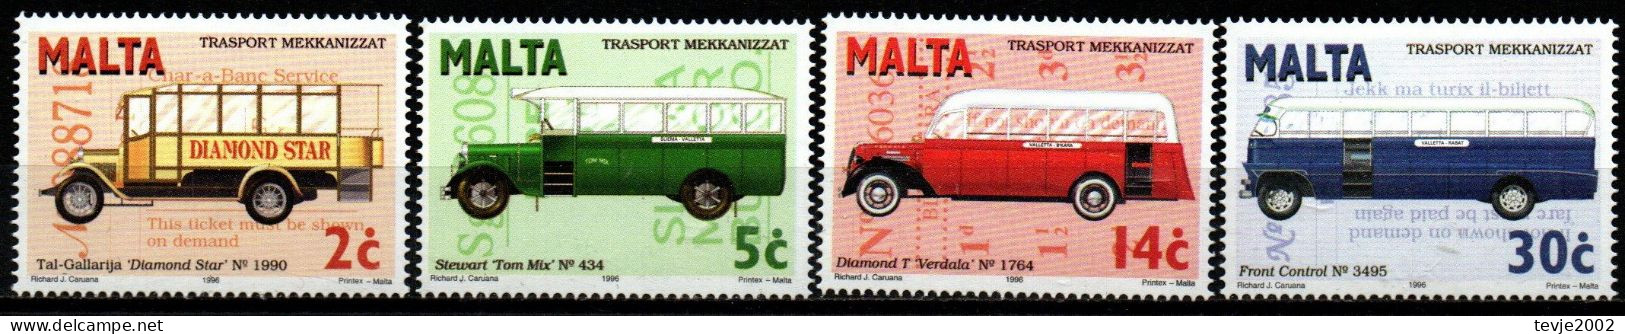 Malta 1996 - Mi.Nr. 997 - 1000 - Postfrisch MNH - Busse Buses - Bus